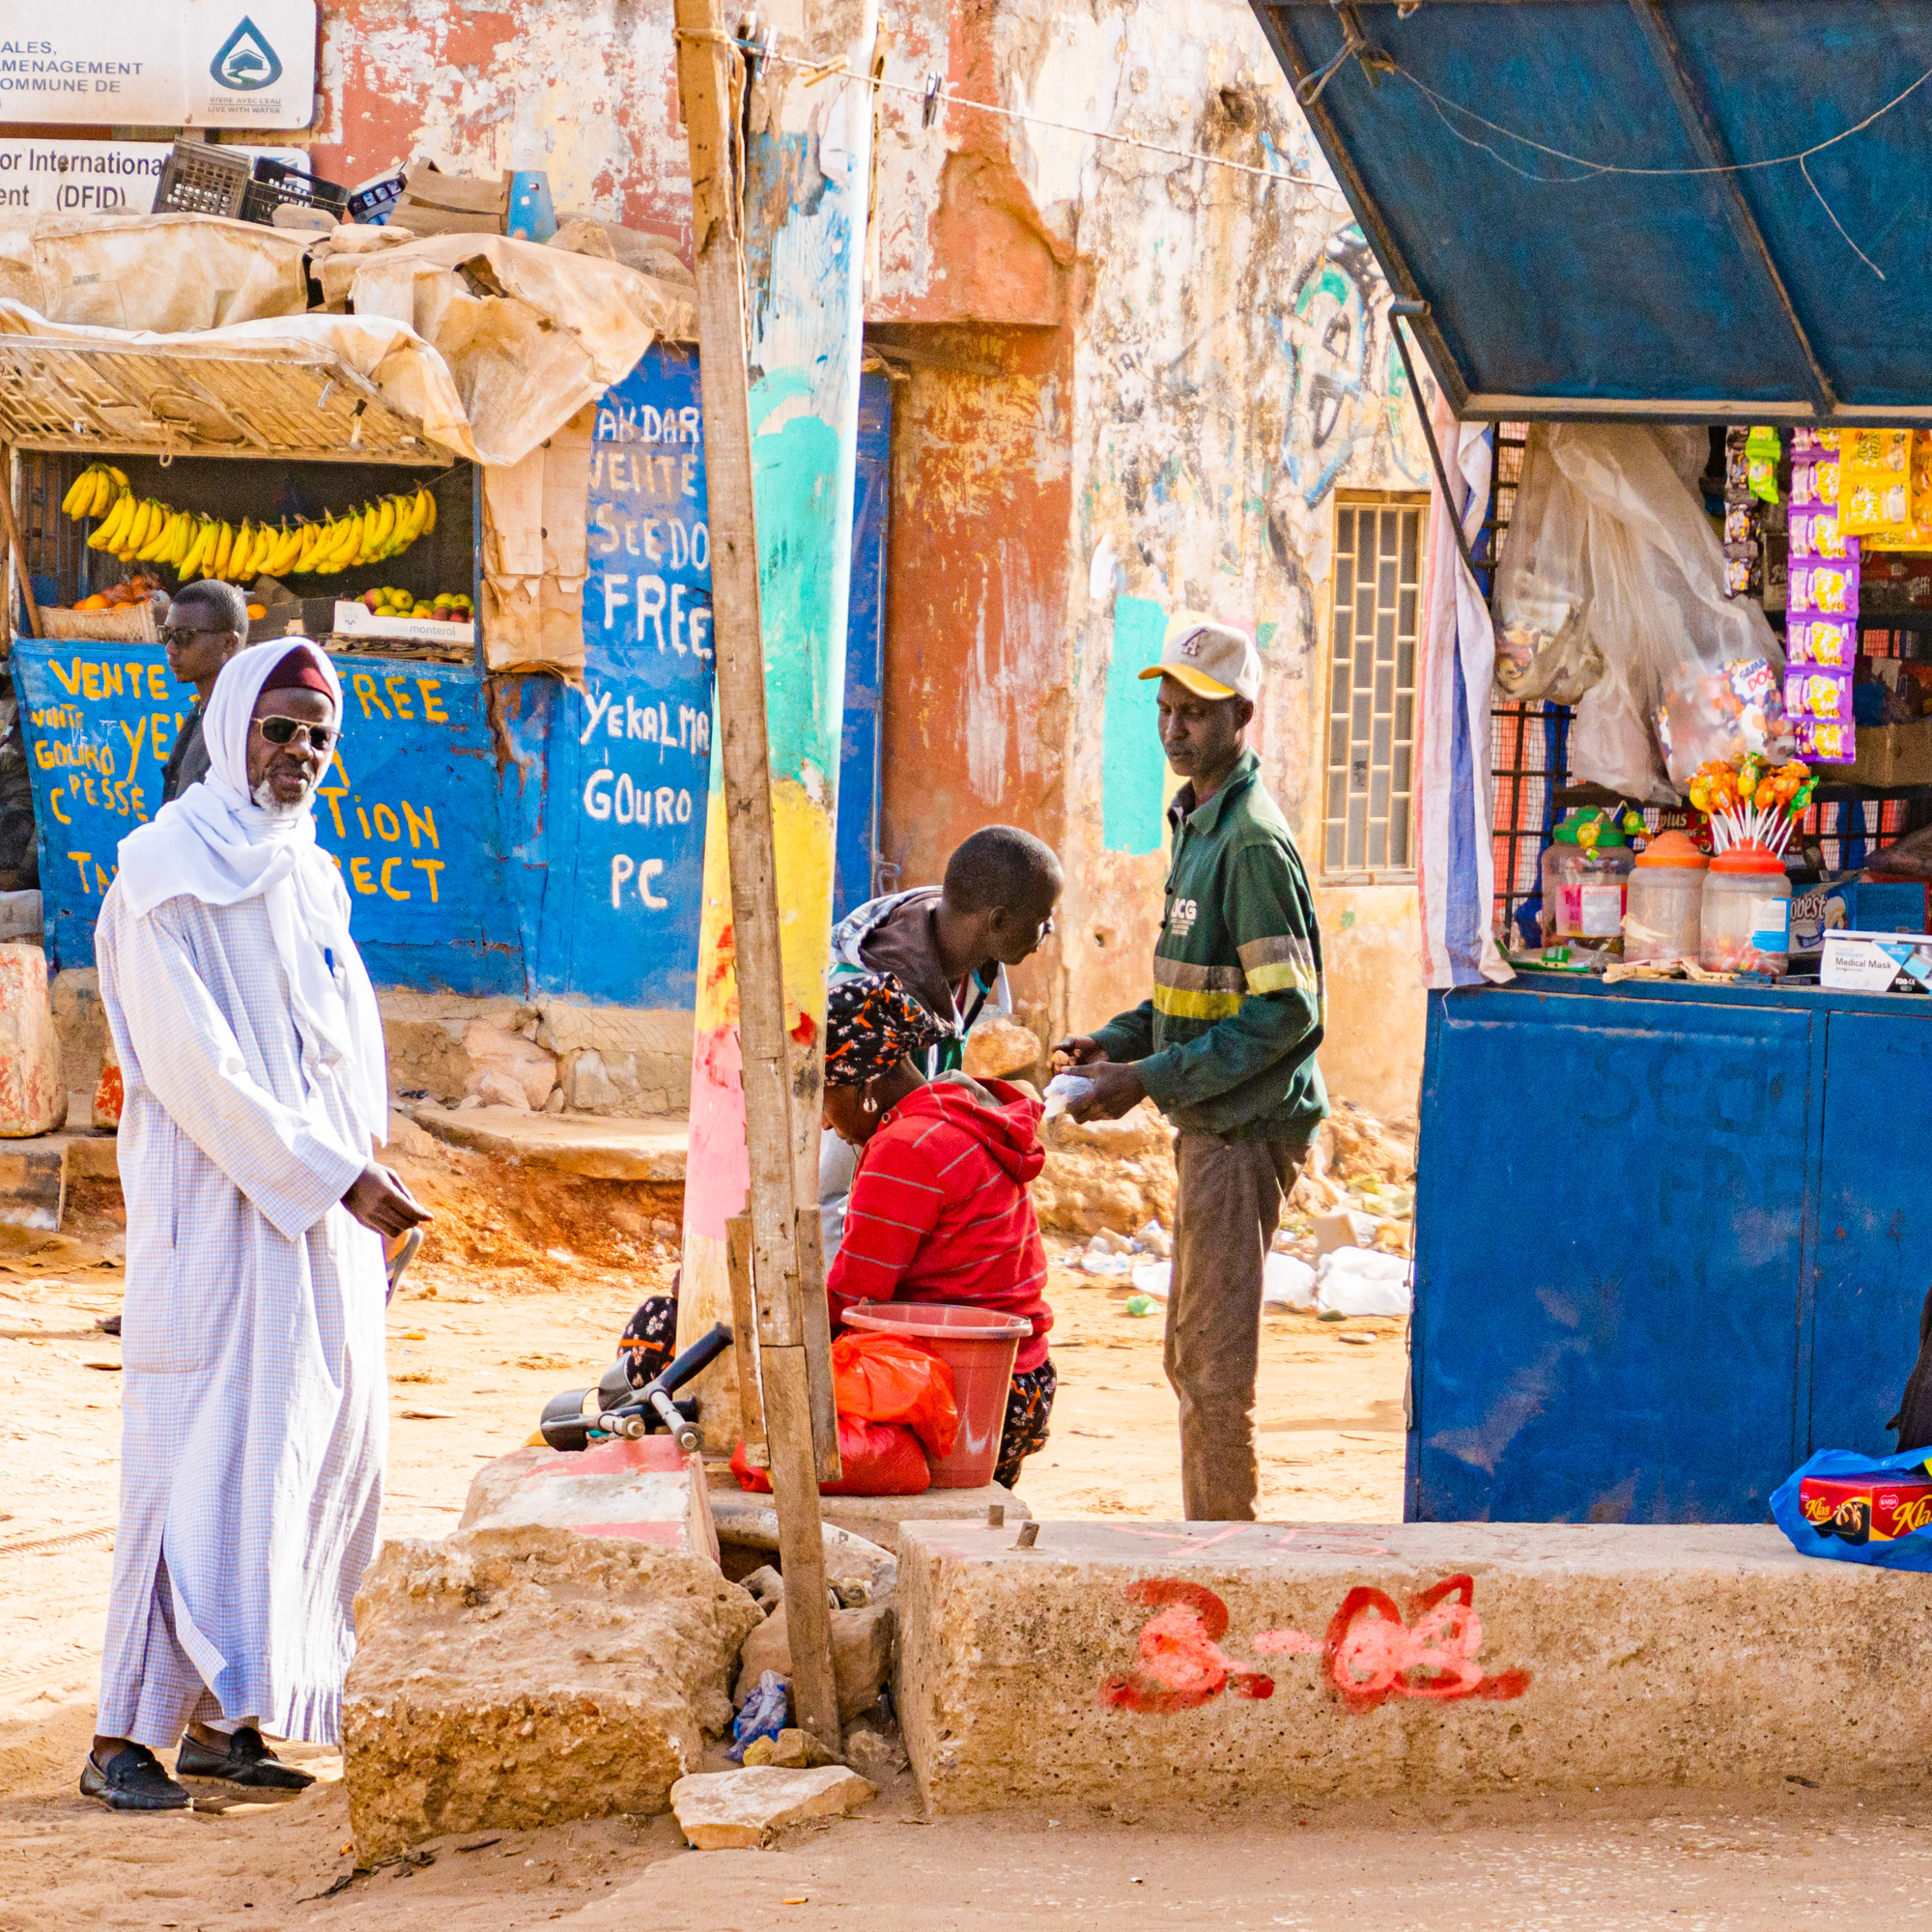 Street scene in Dakar